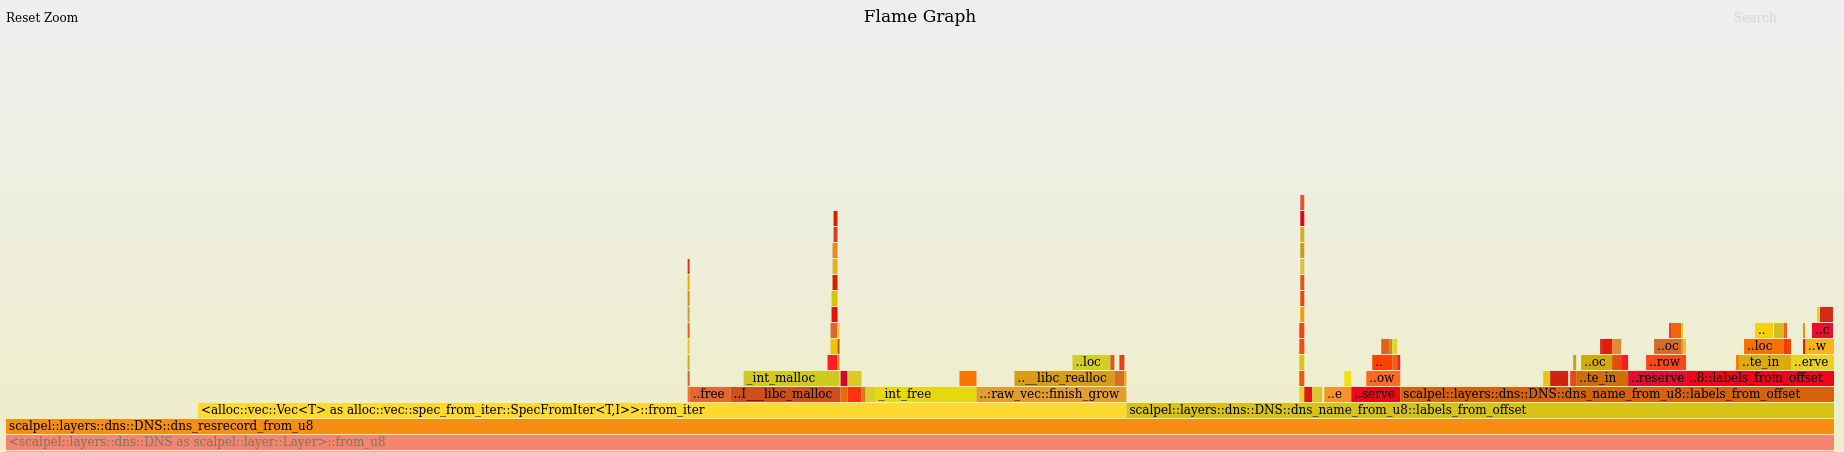 FlameGraph 1 - FlameGraph for Vec<Vec<u8>>